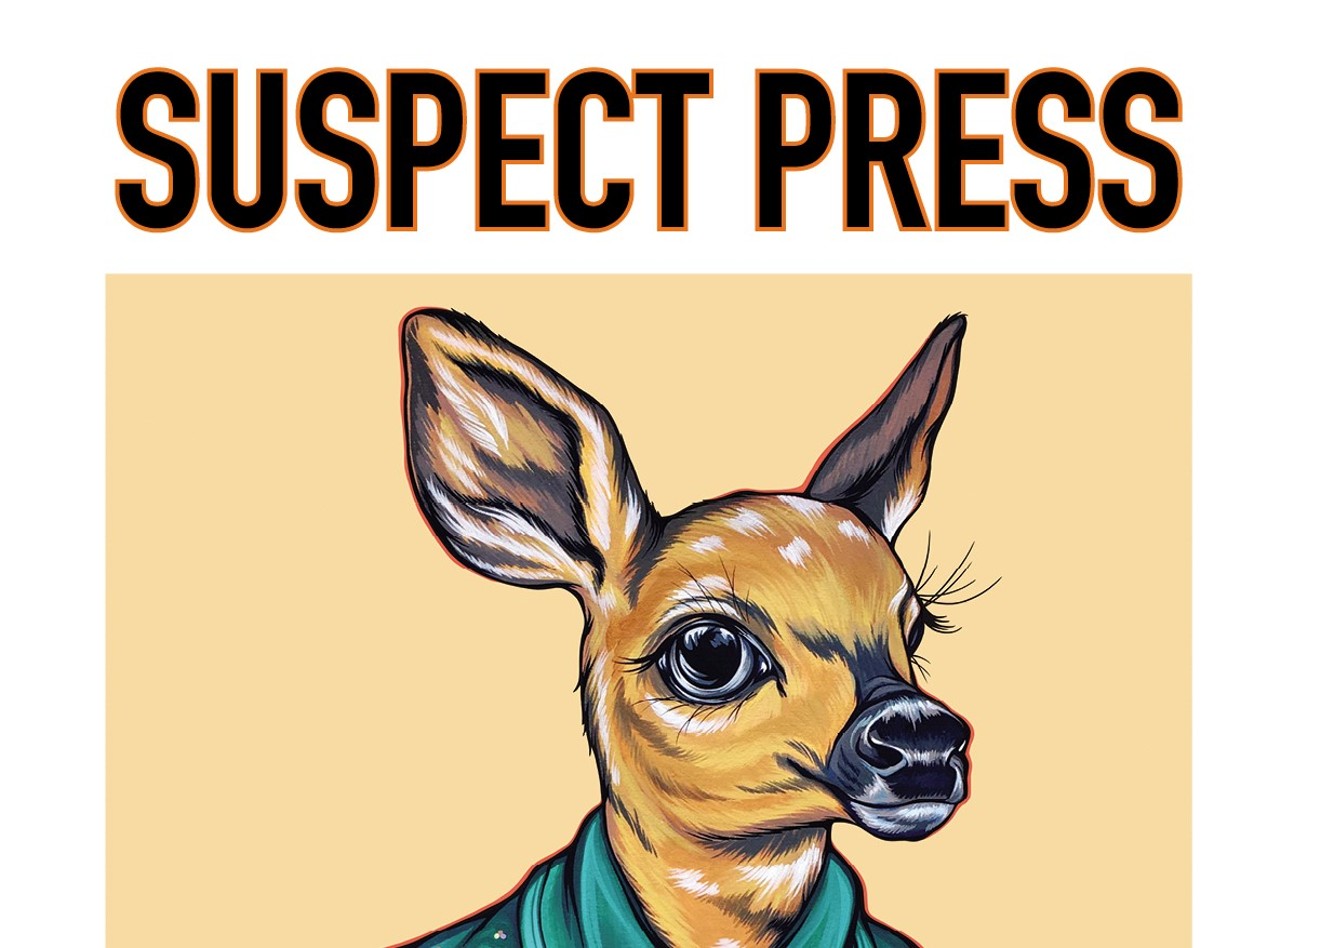 Farewell, Suspect Press.